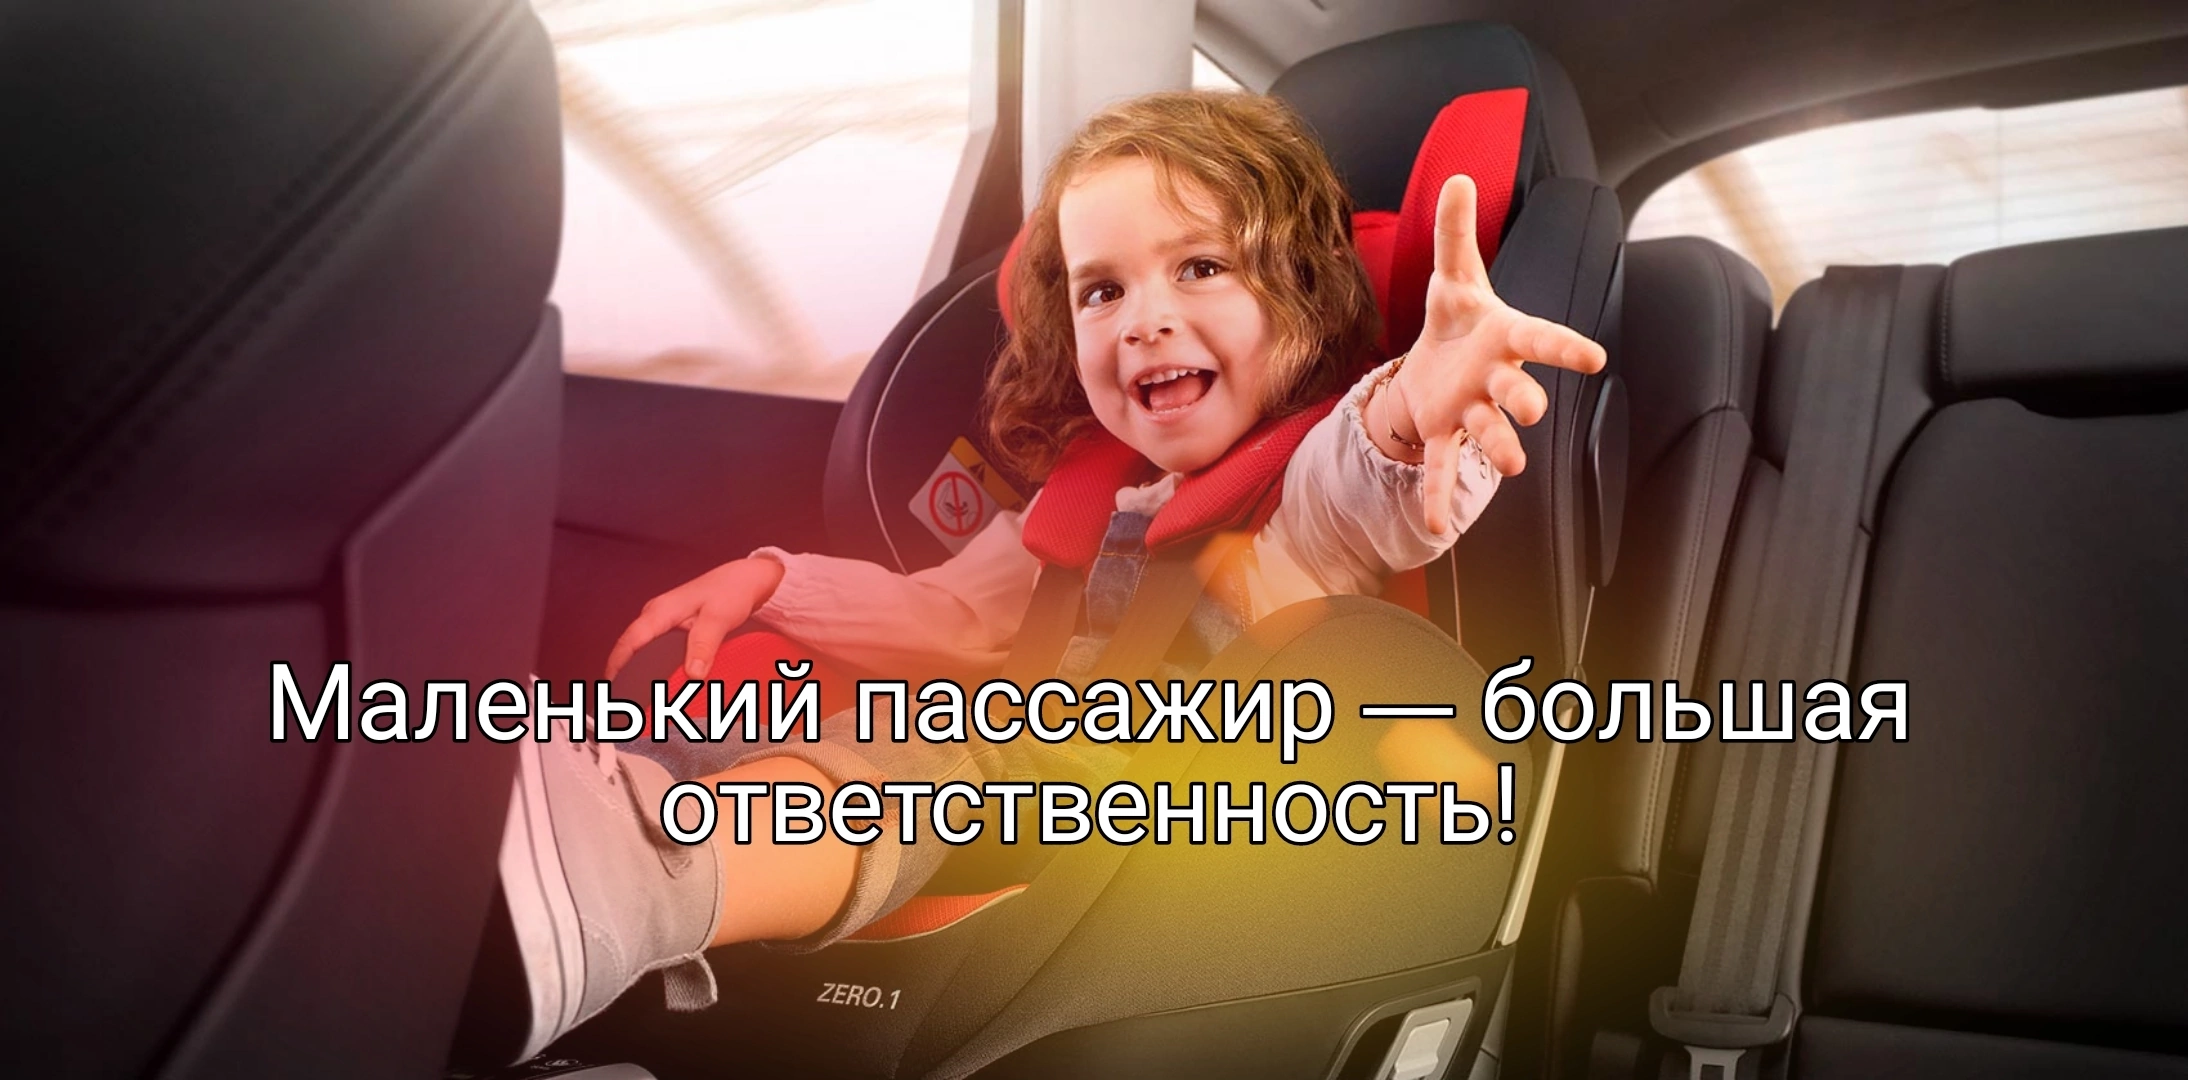 Маленький пассажир-большая ответственность!.